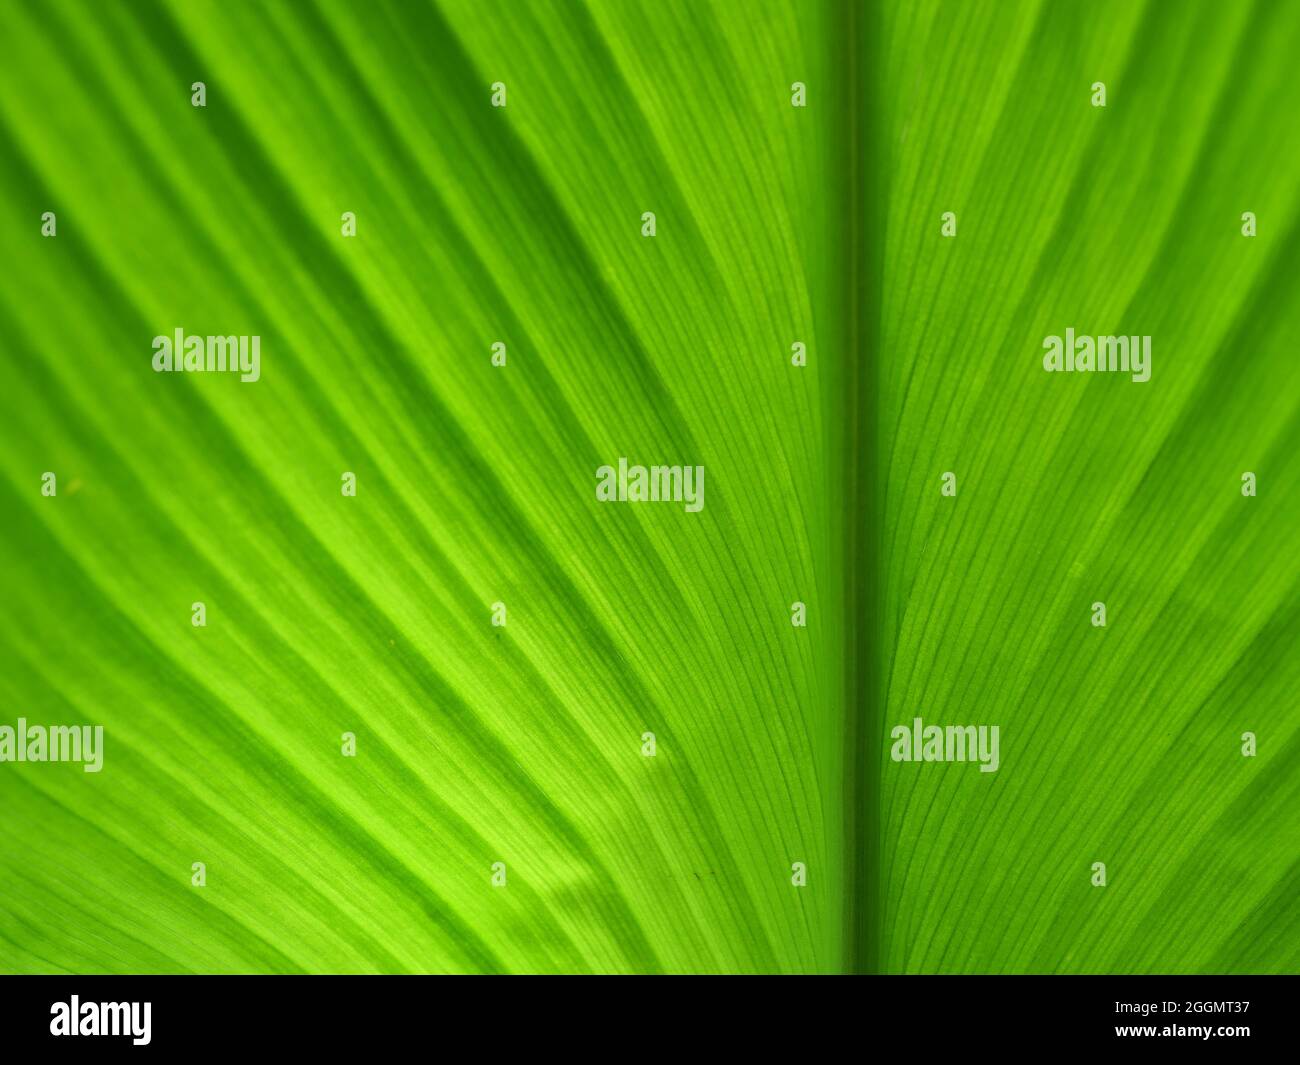 Linee e strisce di colore verde sulla superficie della foglia di curcuma, sfondo astratto dal luminoso con aree scure dalla luce naturale Foto Stock